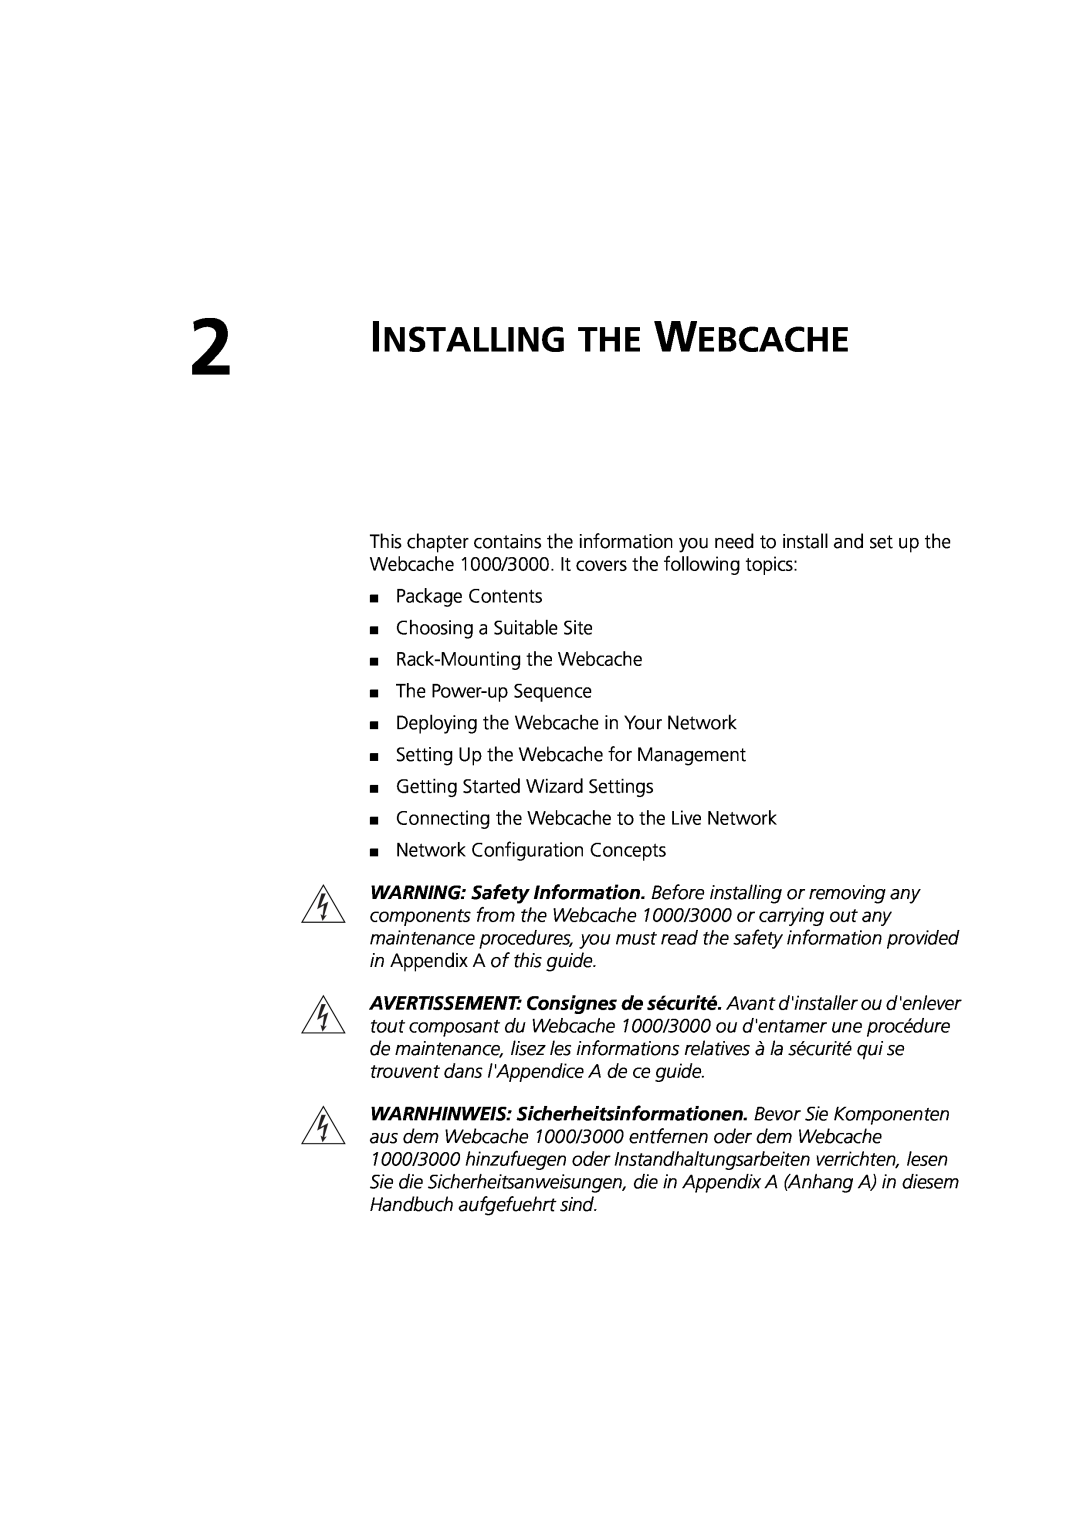 3Com Webcache 3000 (3C16116), Webcache 1000 (3C16115) manual Installing The Webcache 